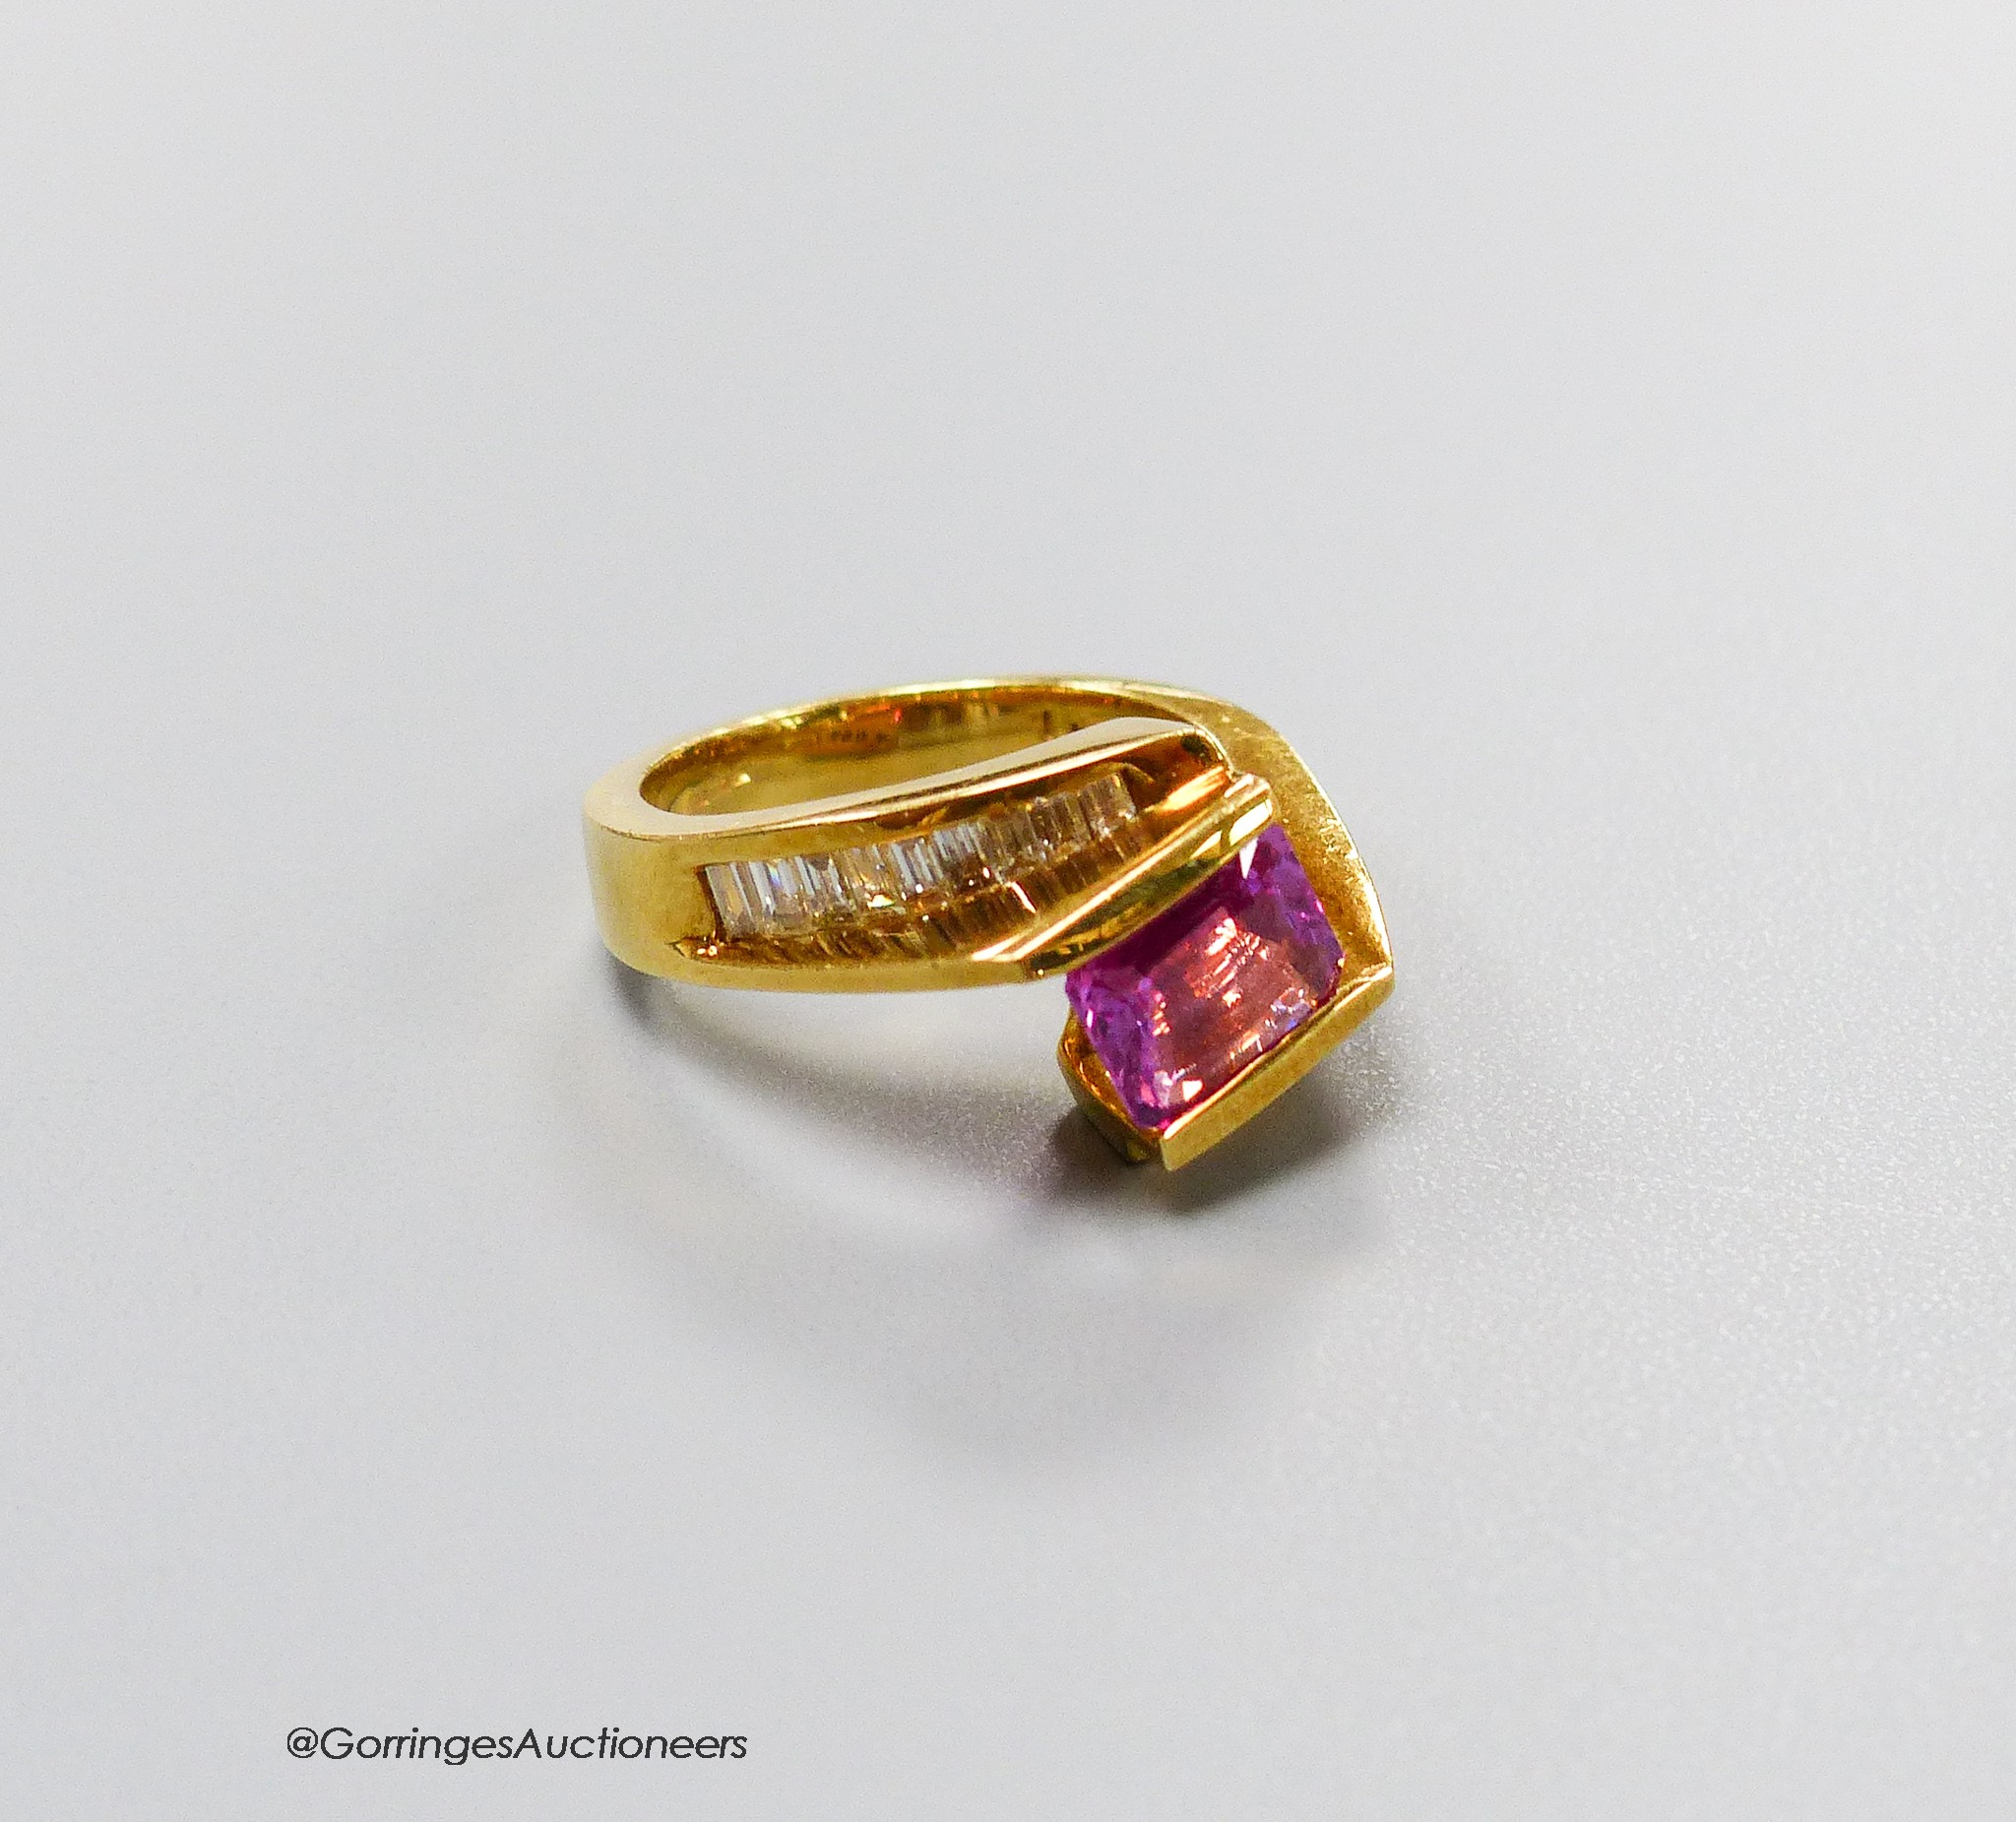 A modern 18k gold, emerald cut pink sapphire set dress ring, with graduated baguette cut diamond set shoulders, size M, gross weight 8.6 grams.